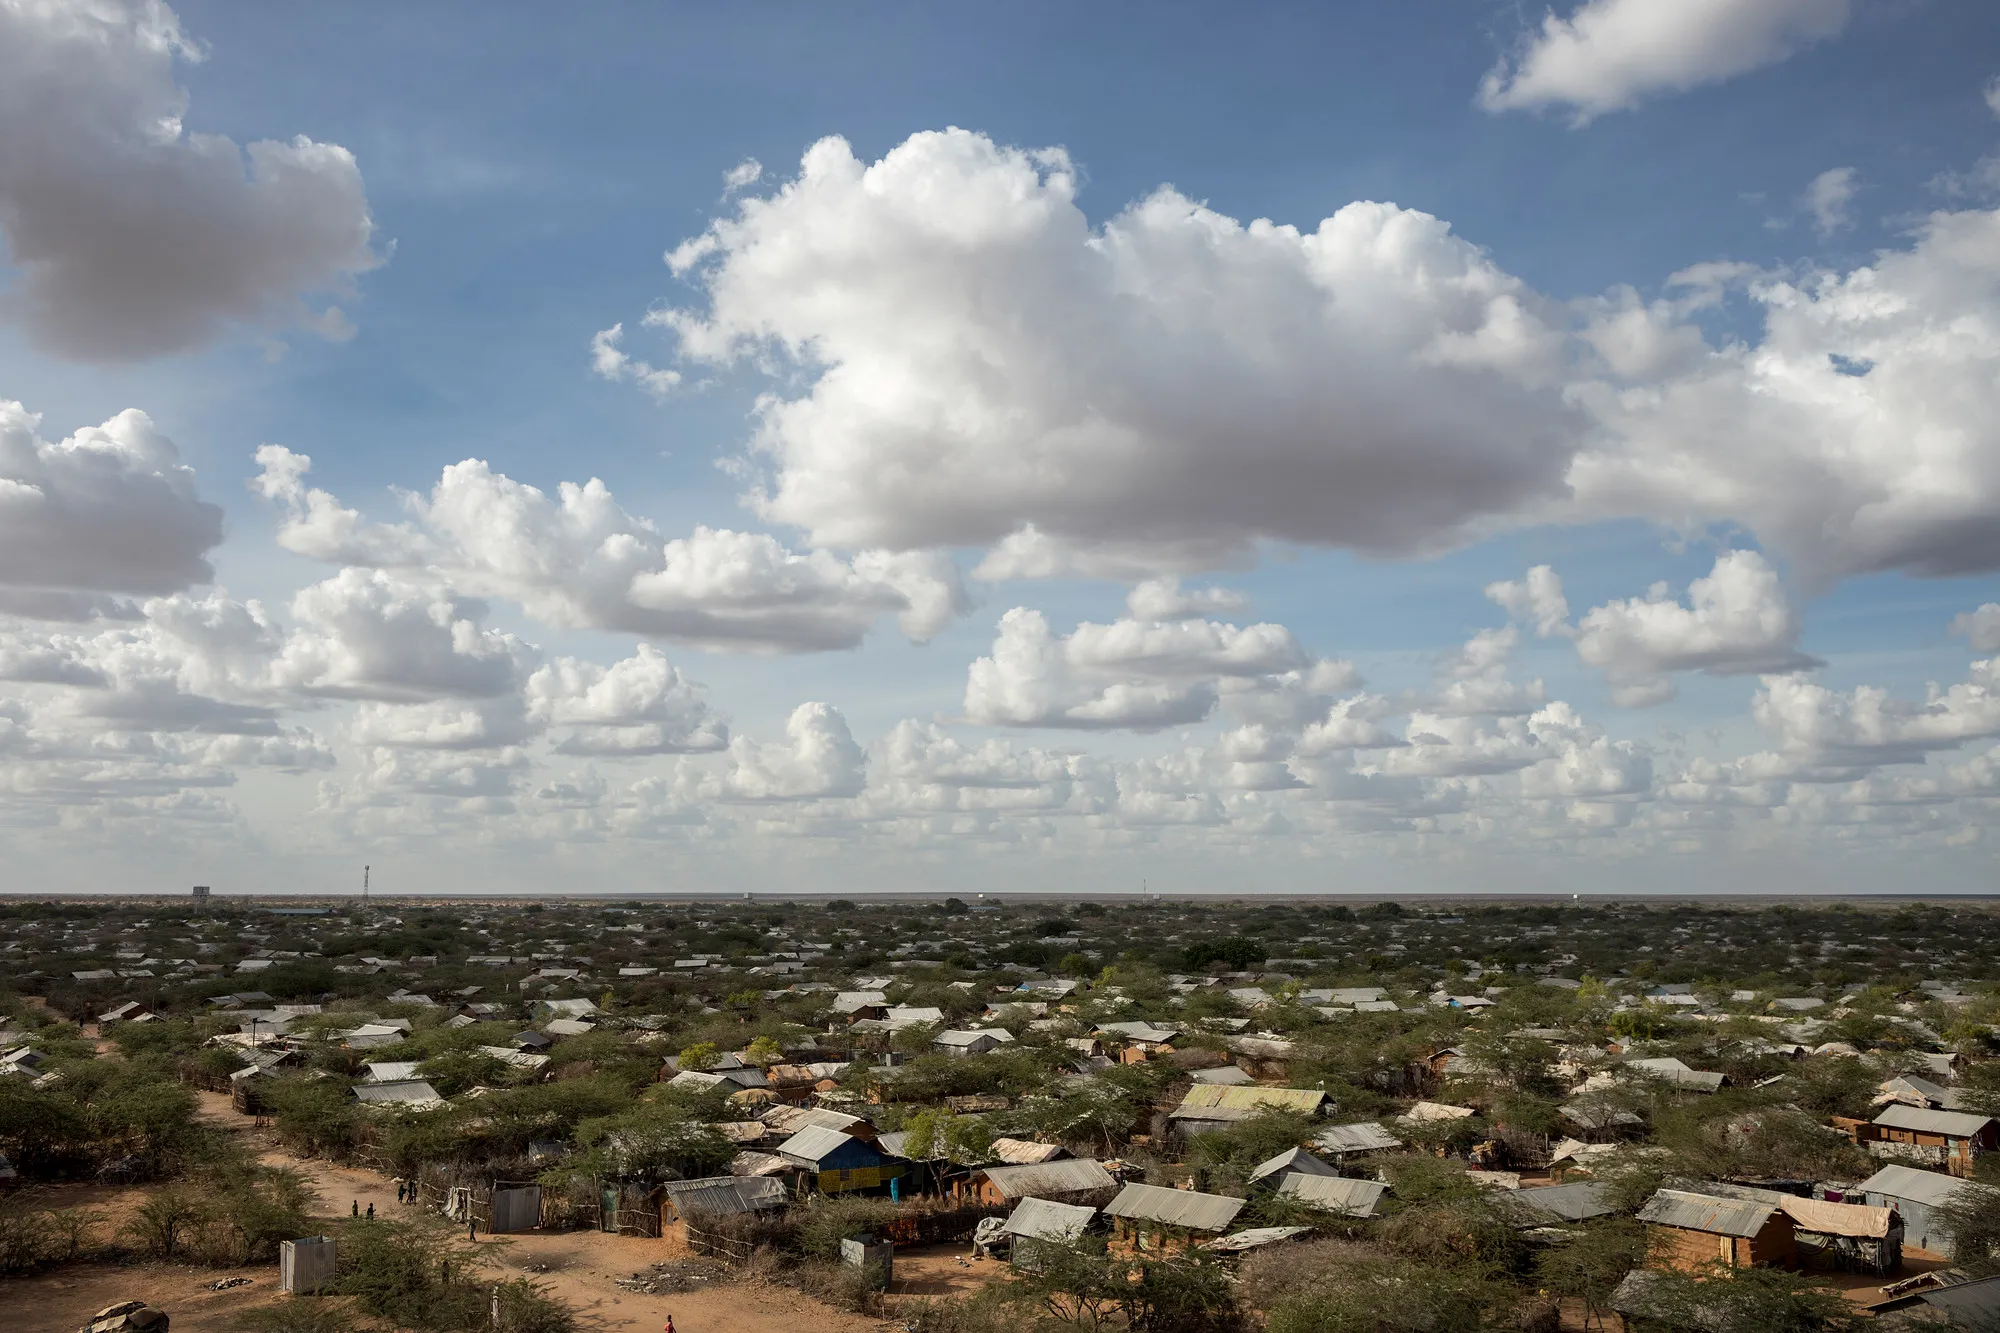 Campo de refugiados de Dadaab desde arriba. Foto de CARE / Sven Torfinn